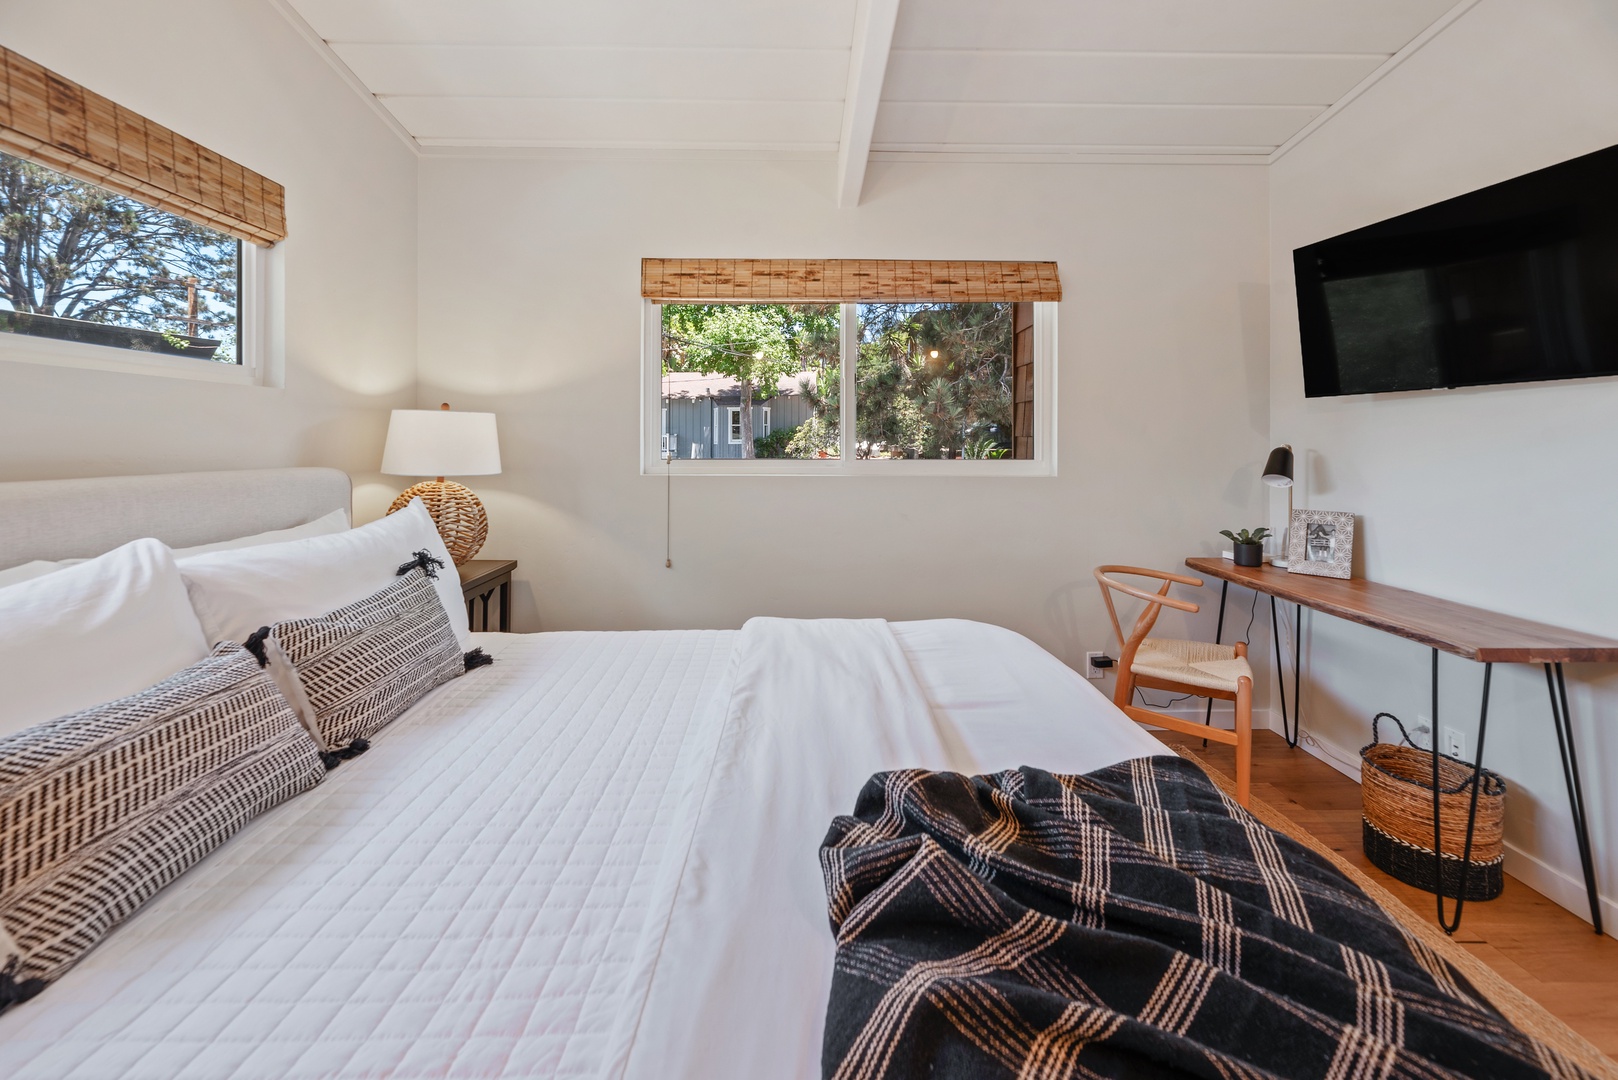 Del Mar Vacation Rentals, Del Mar Zuni Delight - Bedroom has a Queen size bed and shared bathroom